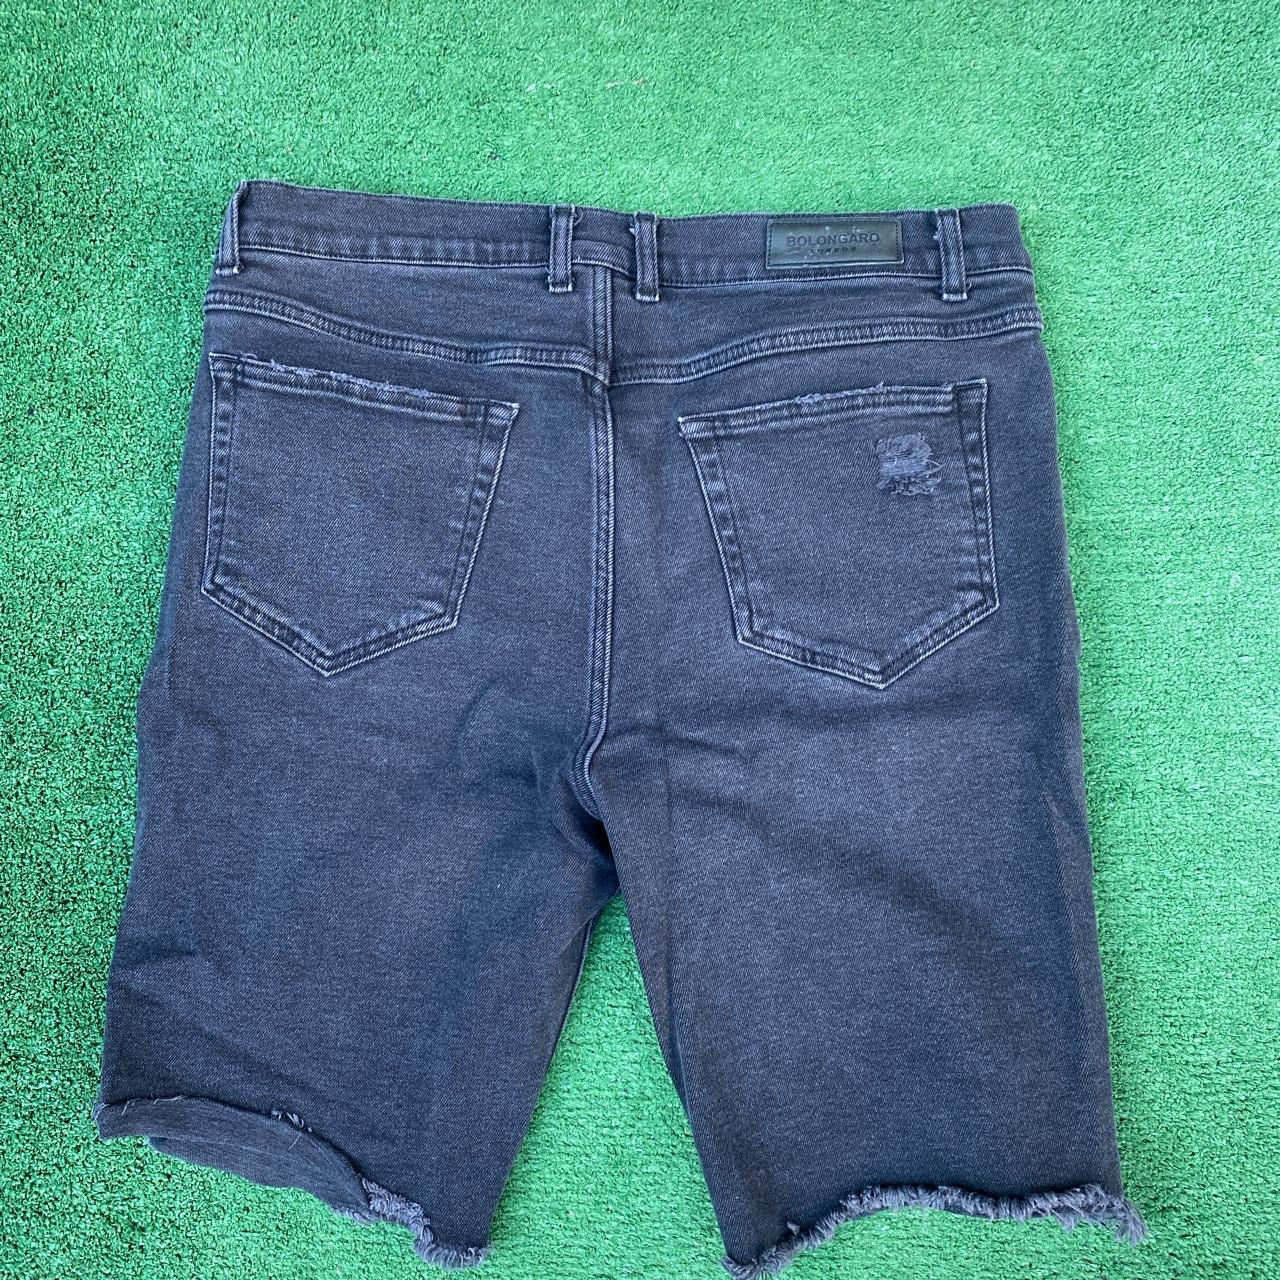 Product Image 3 - Black Bolongaro Jean Shorts/ Size